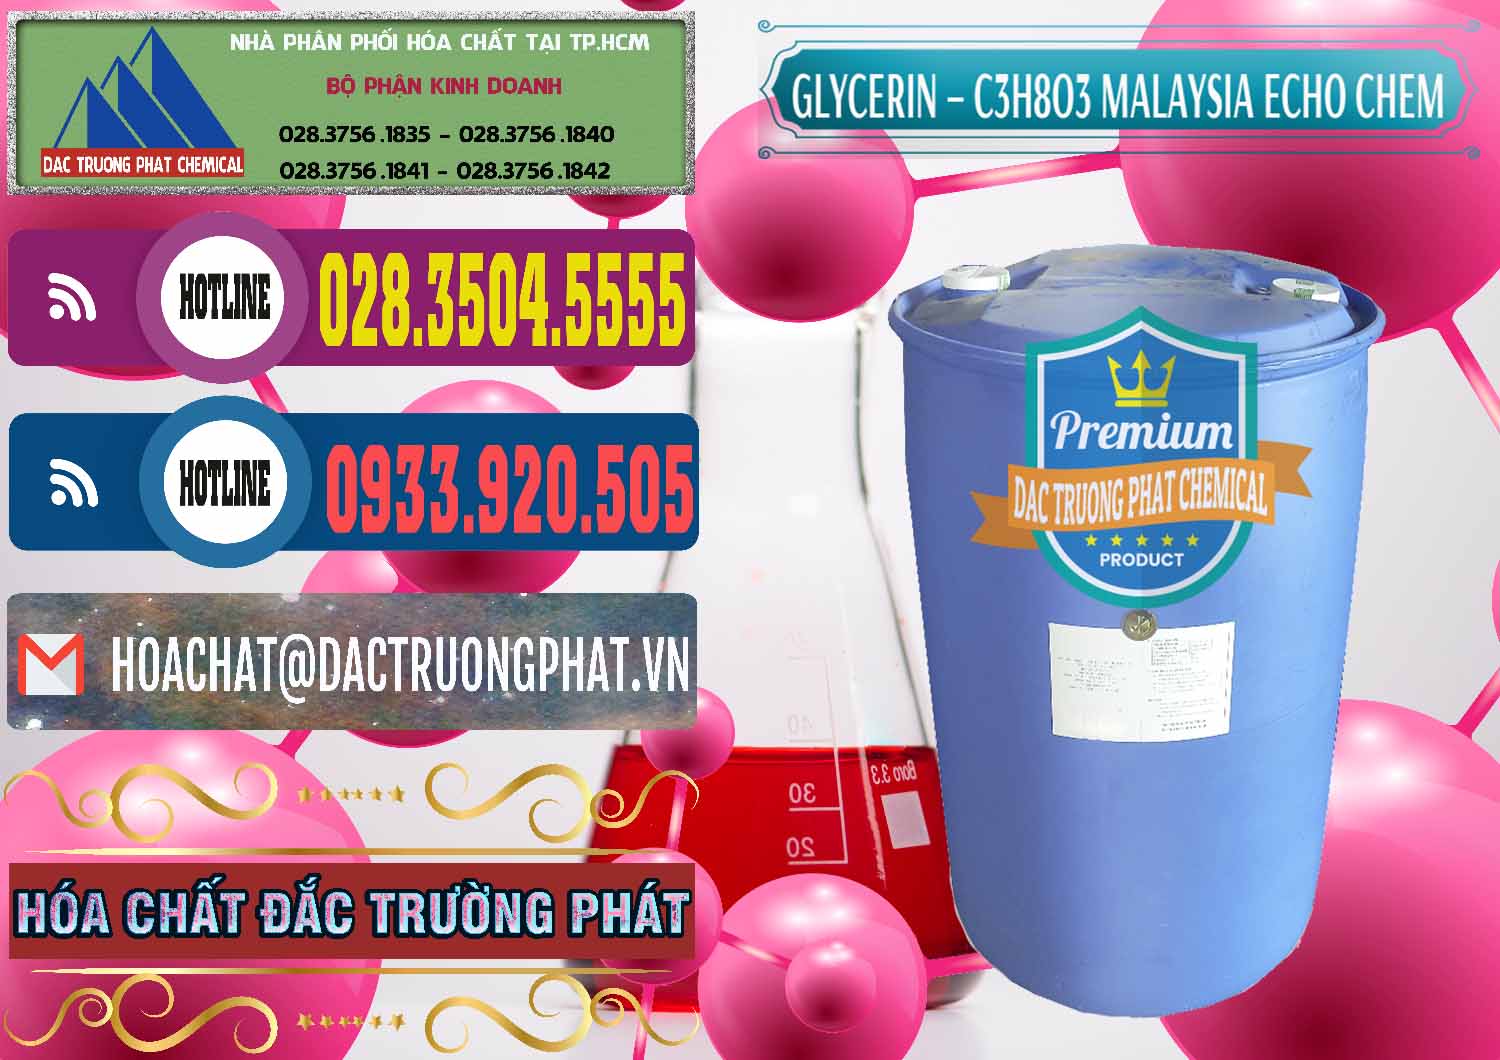 Cty chuyên bán _ cung cấp C3H8O3 - Glycerin 99.7% Echo Chem Malaysia - 0273 - Nhà phân phối & cung cấp hóa chất tại TP.HCM - muabanhoachat.com.vn